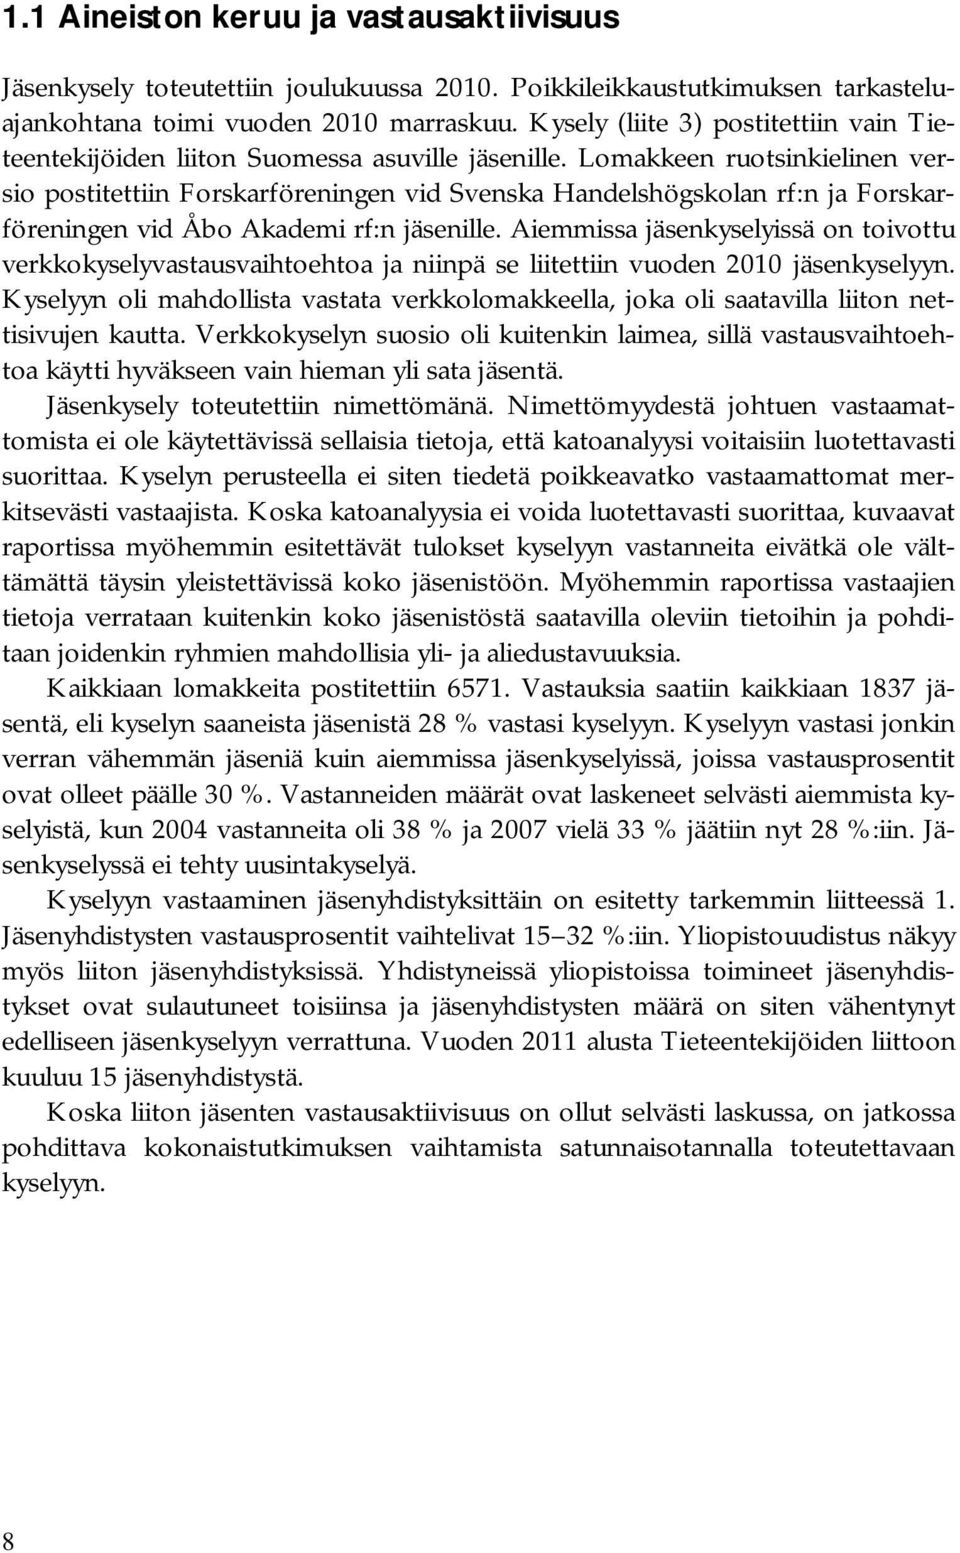 Lomakkeen ruotsinkielinen versio postitettiin Forskarföreningen vid Svenska Handelshögskolan rf:n ja Forskarföreningen vid Åbo Akademi rf:n jäsenille.